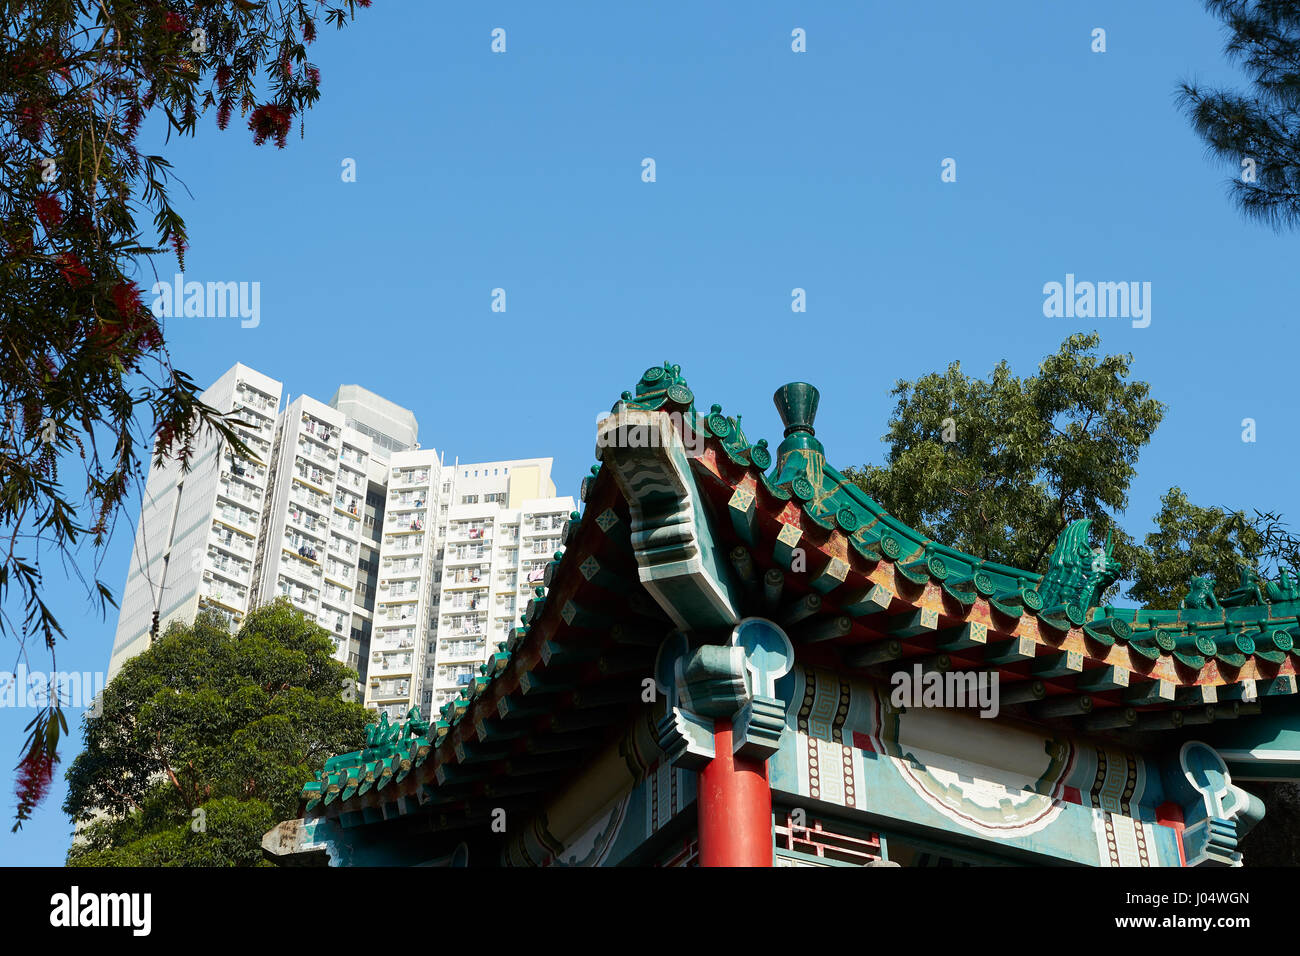 Contrasting Buildings At The Wong Tai Sin Temple, Hong Kong. Stock Photo